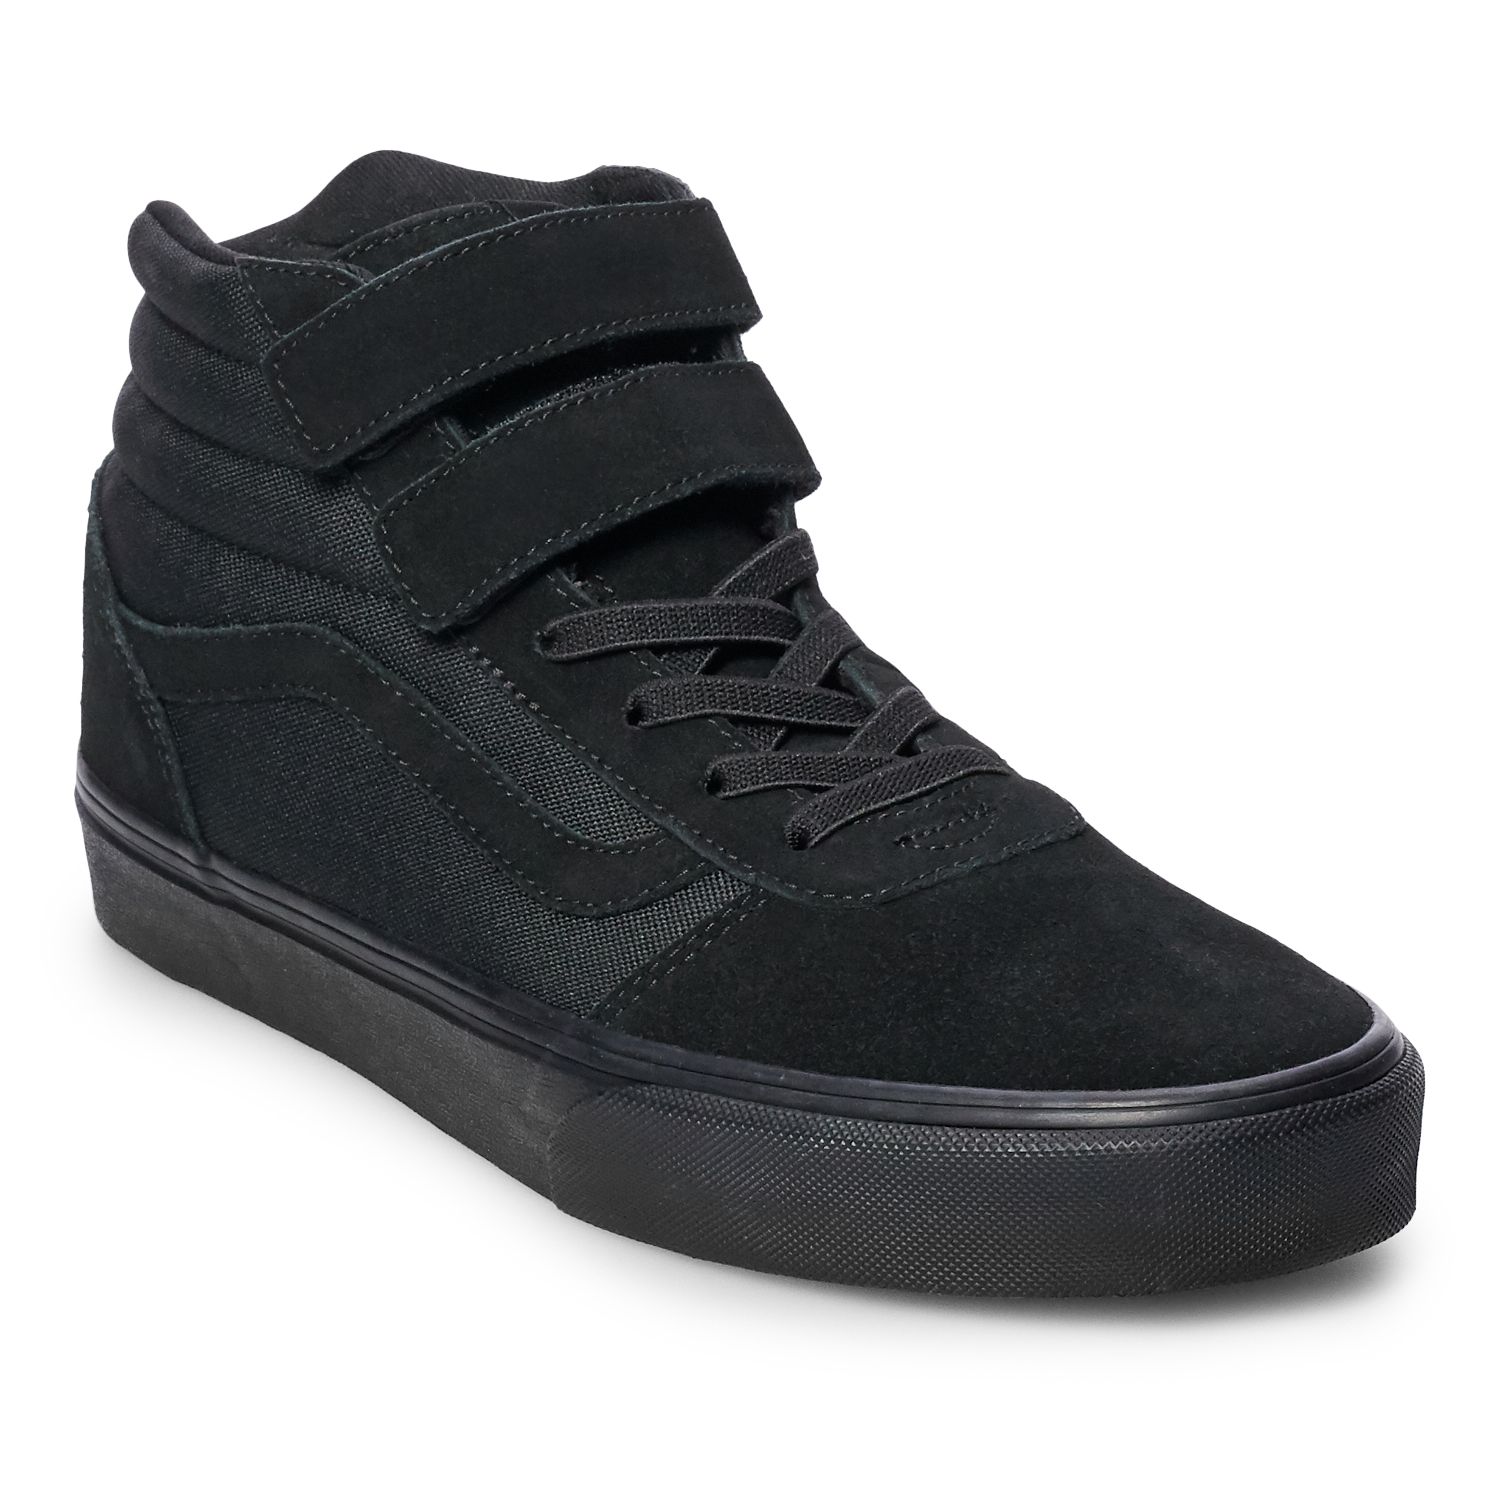 vans ward men's leather skate shoes